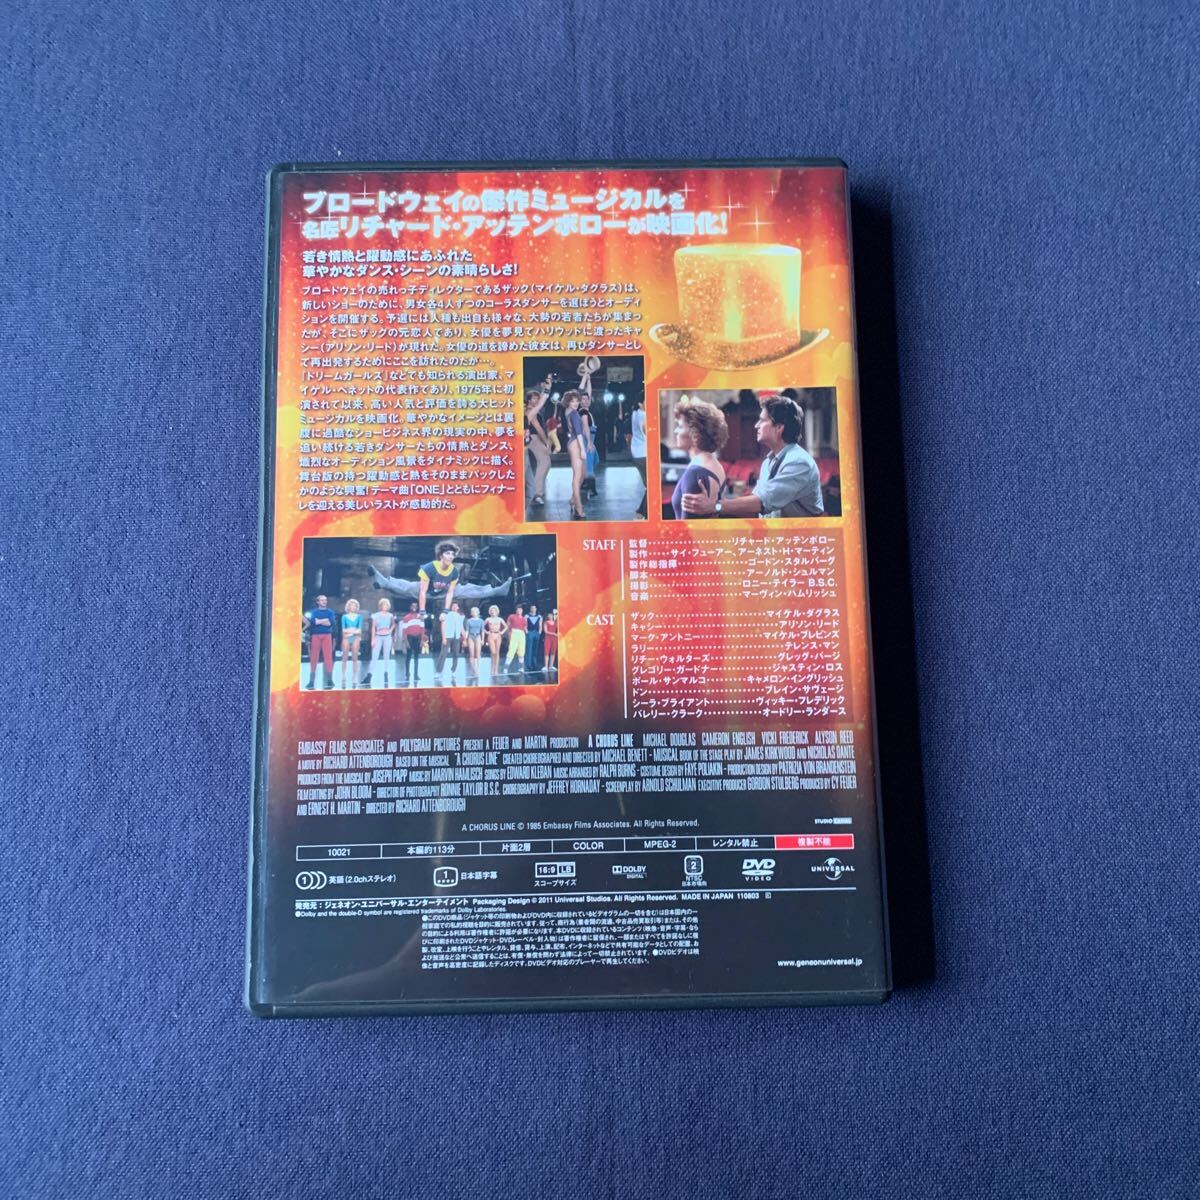 【セル】 DVD『コーラスライン』 マイケル・ダグラス アリソン・リード マイケル・ブレビンス テレンス・マン グレッグ・バージの画像2